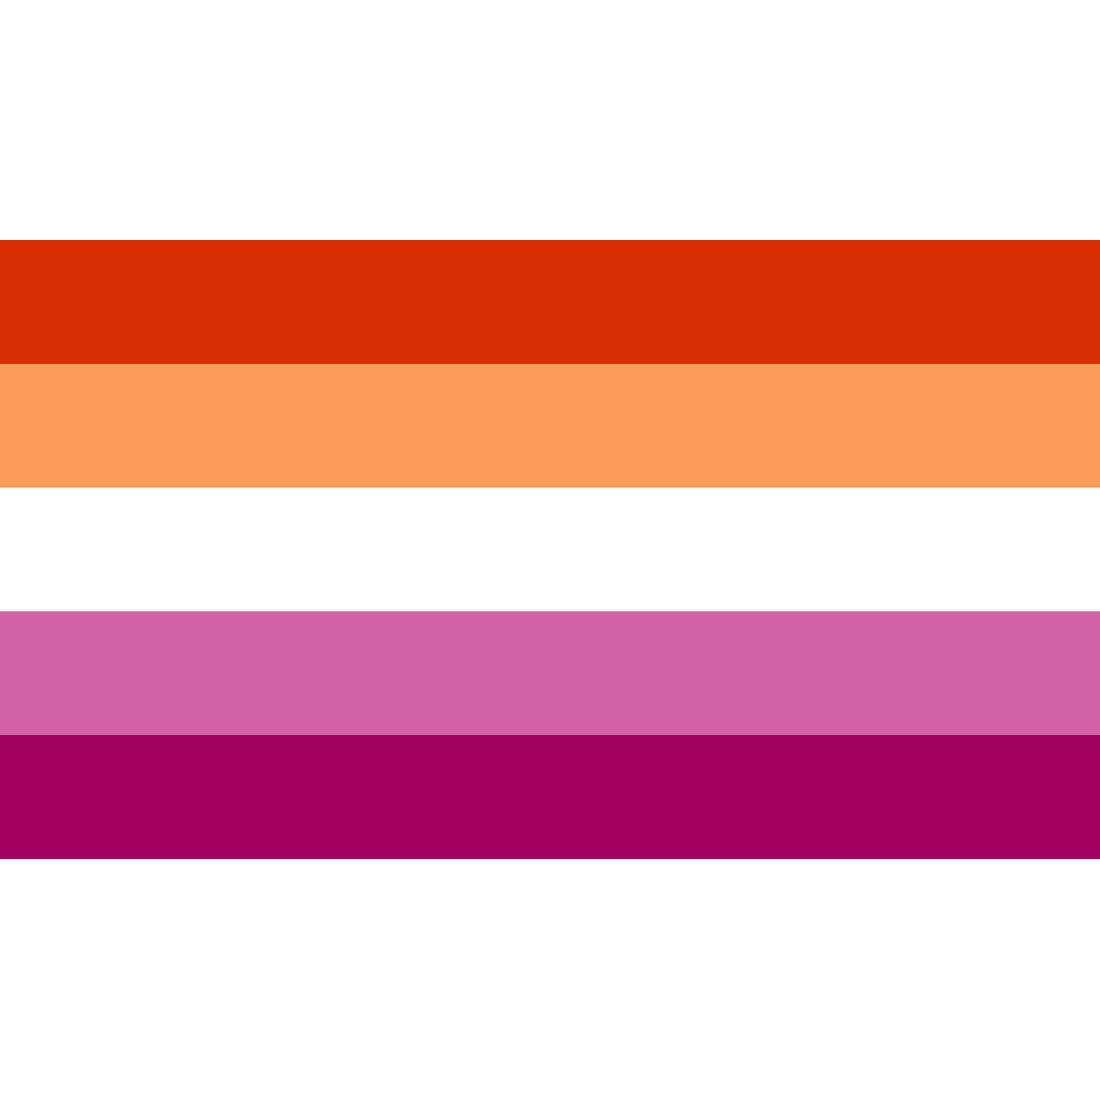 Lesbische Pride Flag